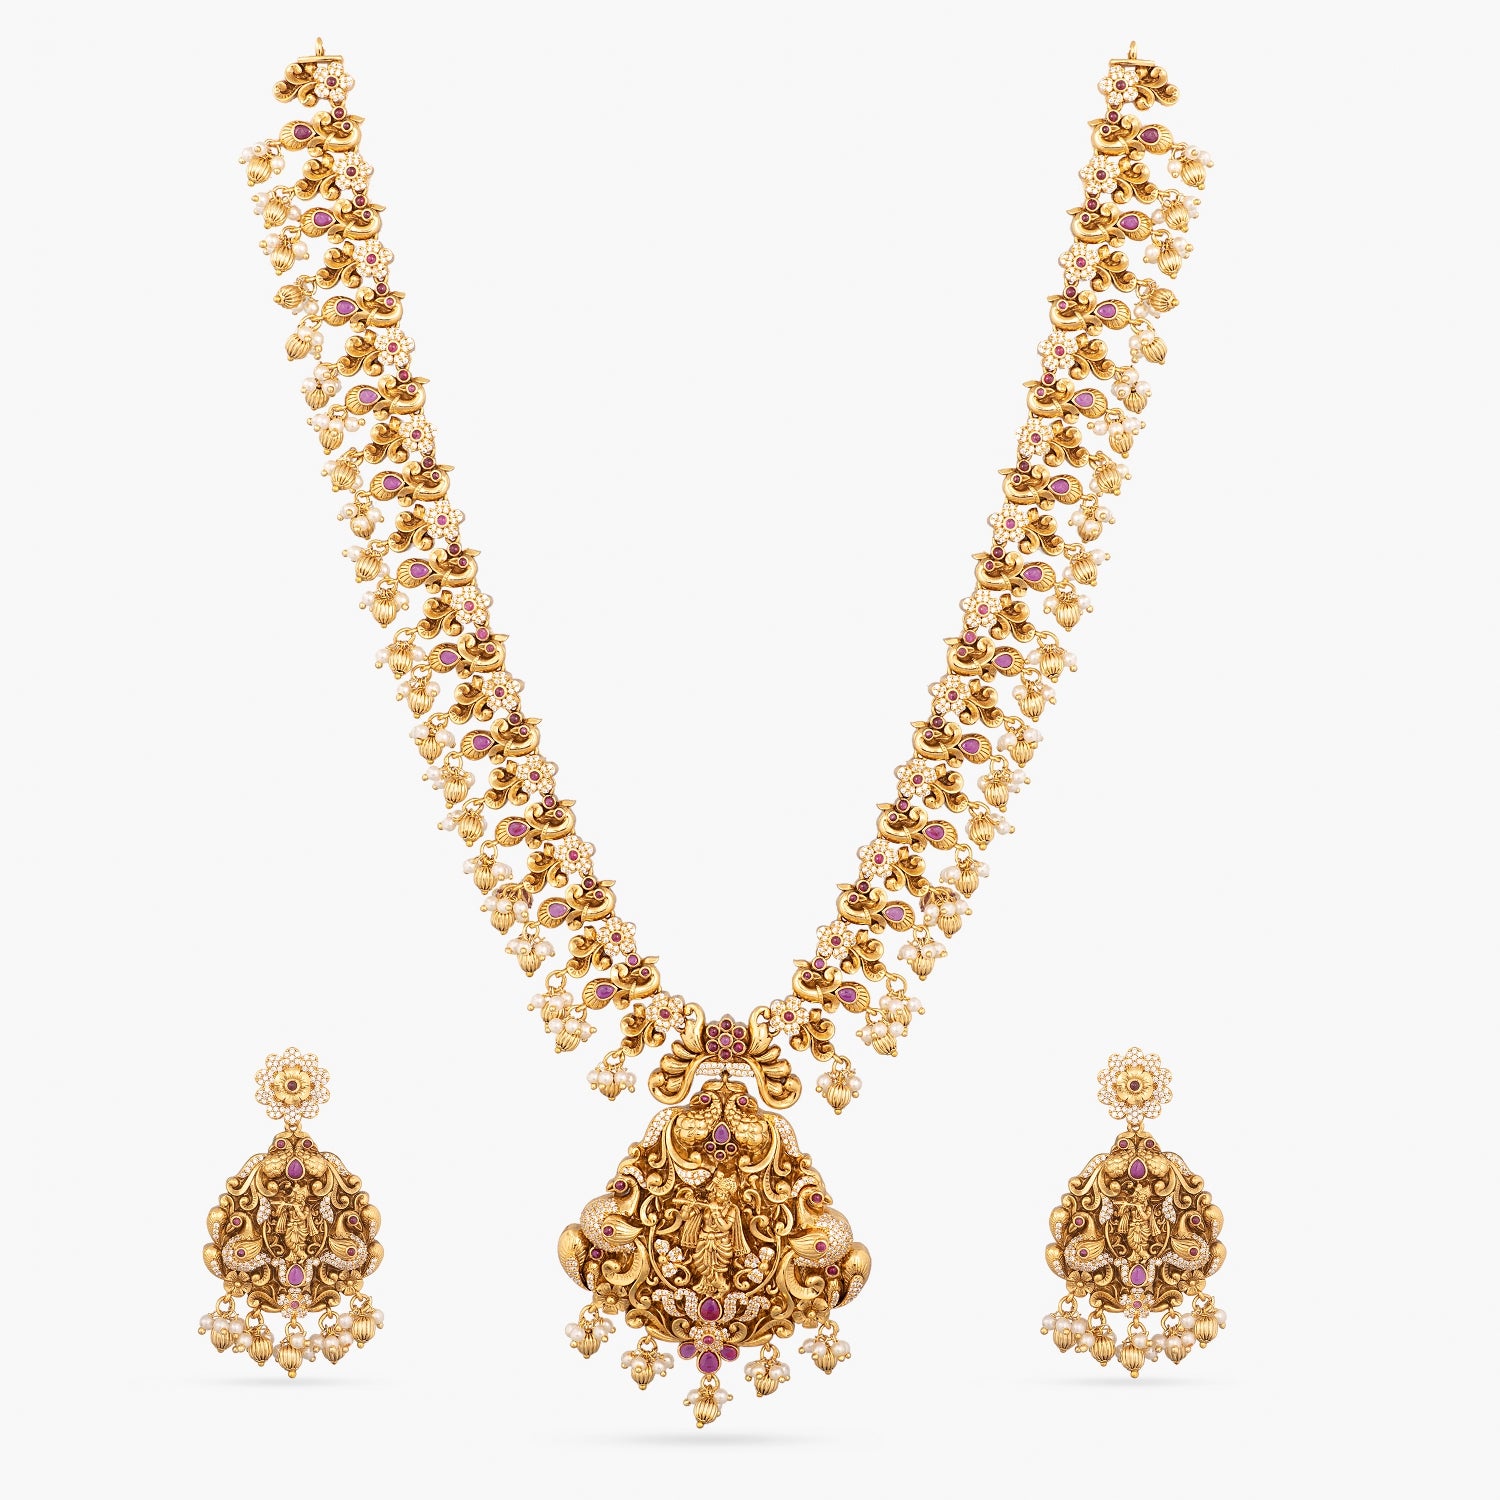 Buy Kerala Traditional Jewelry Gold Design Plain Kerala Haram Design Buy  Online